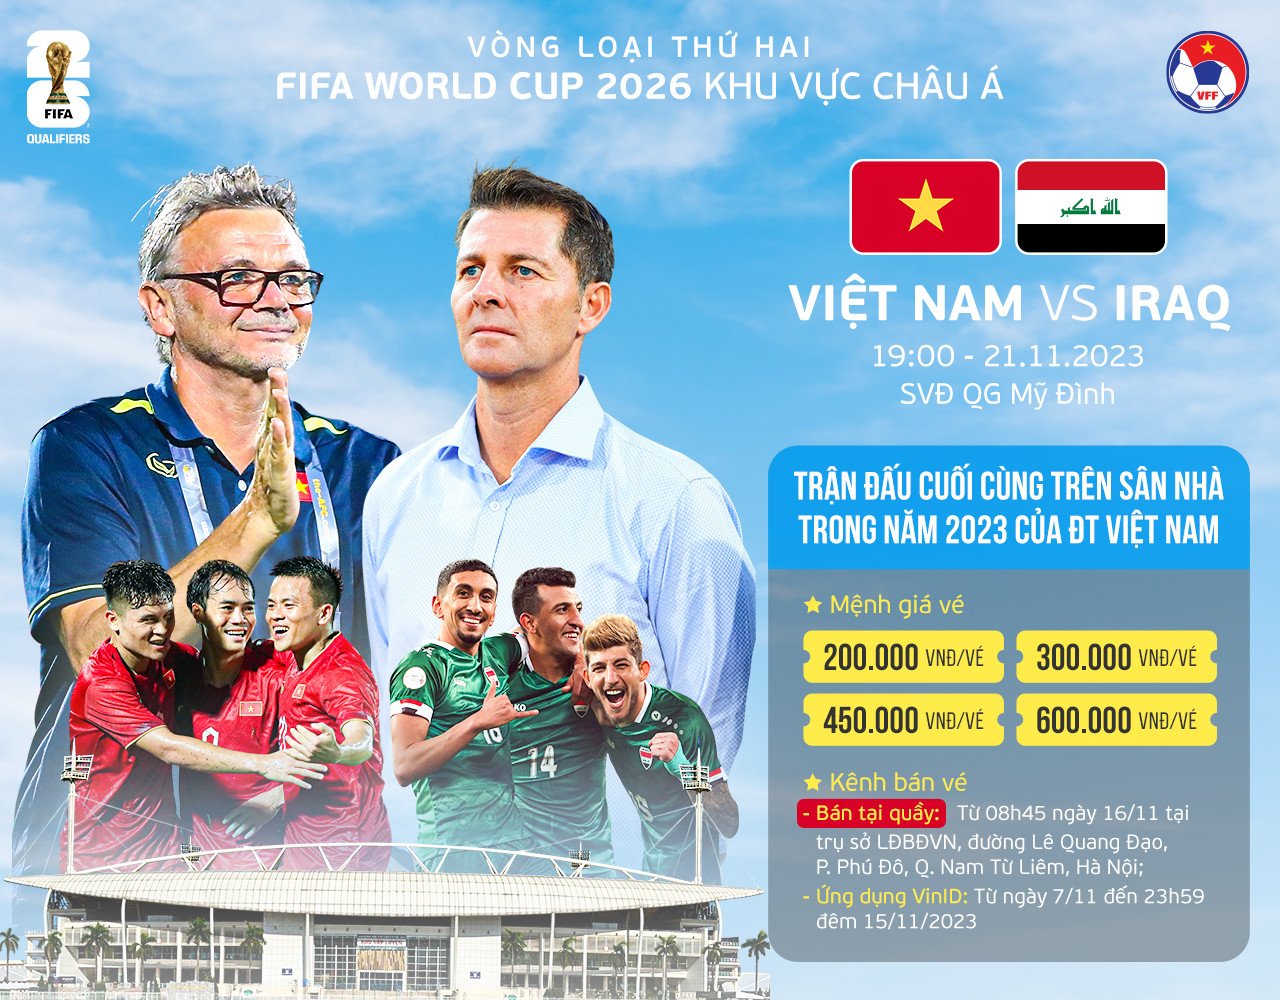 Vé xem trận đấu giữa đội tuyển Việt Nam và Iraq được bán ở đâu, khi nào? - Ảnh 1.